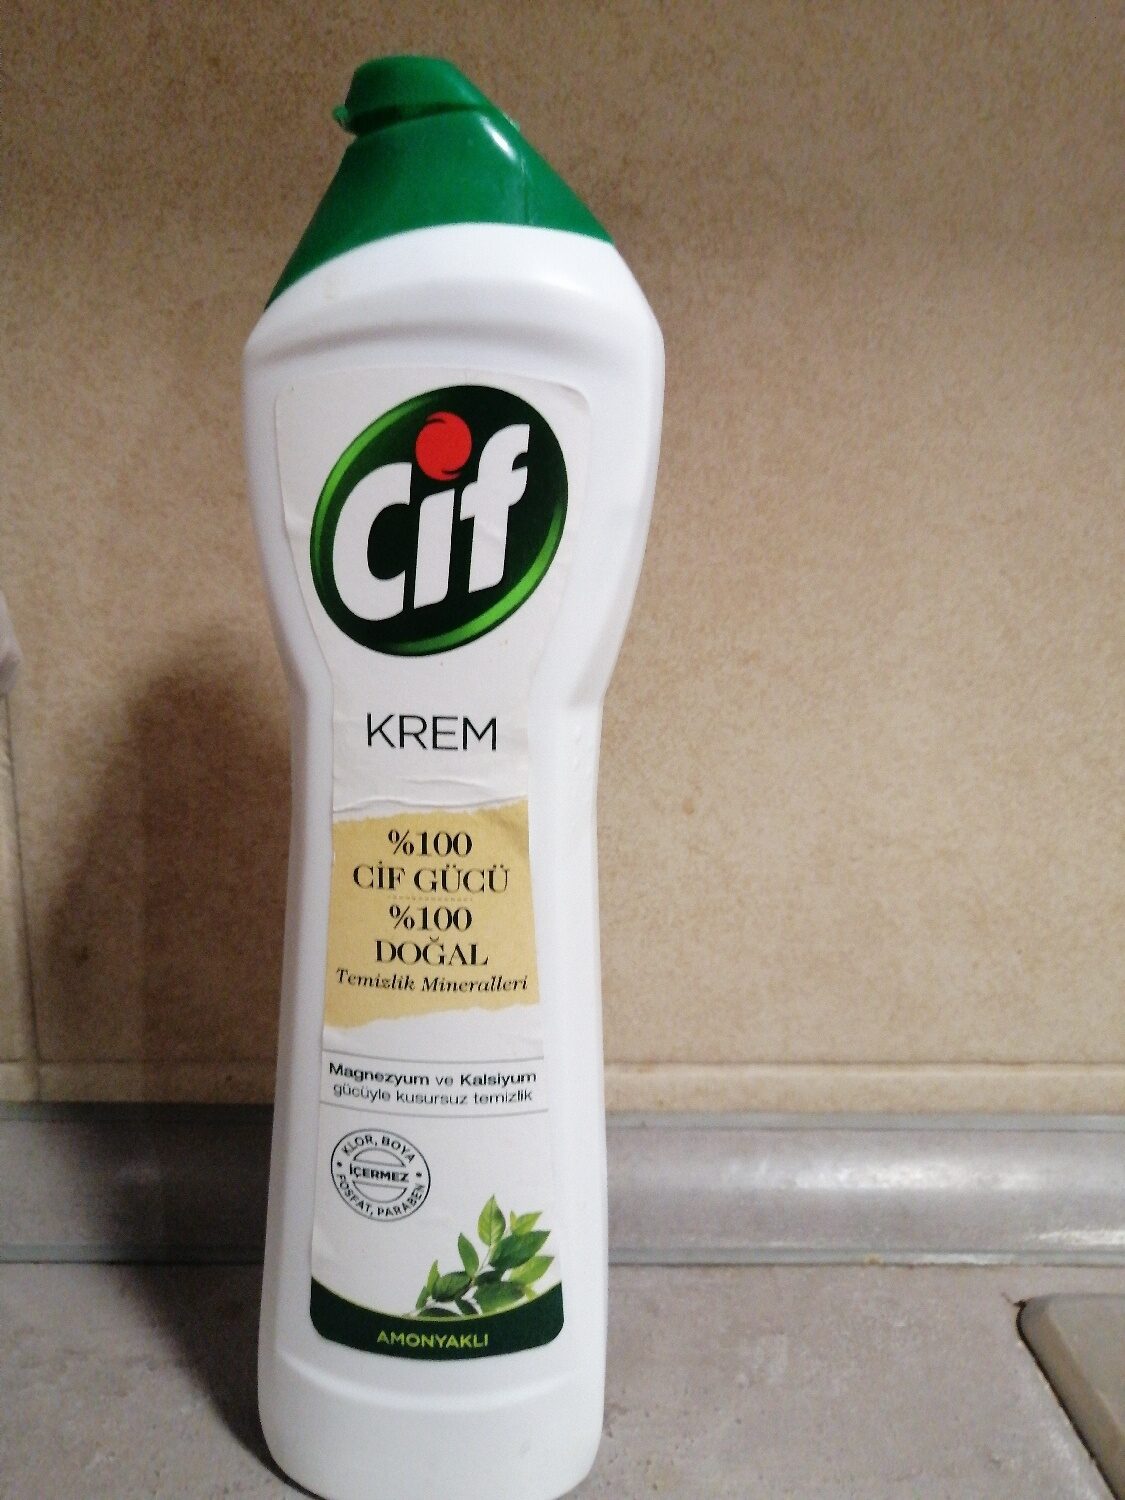 cif krem - Product - xx